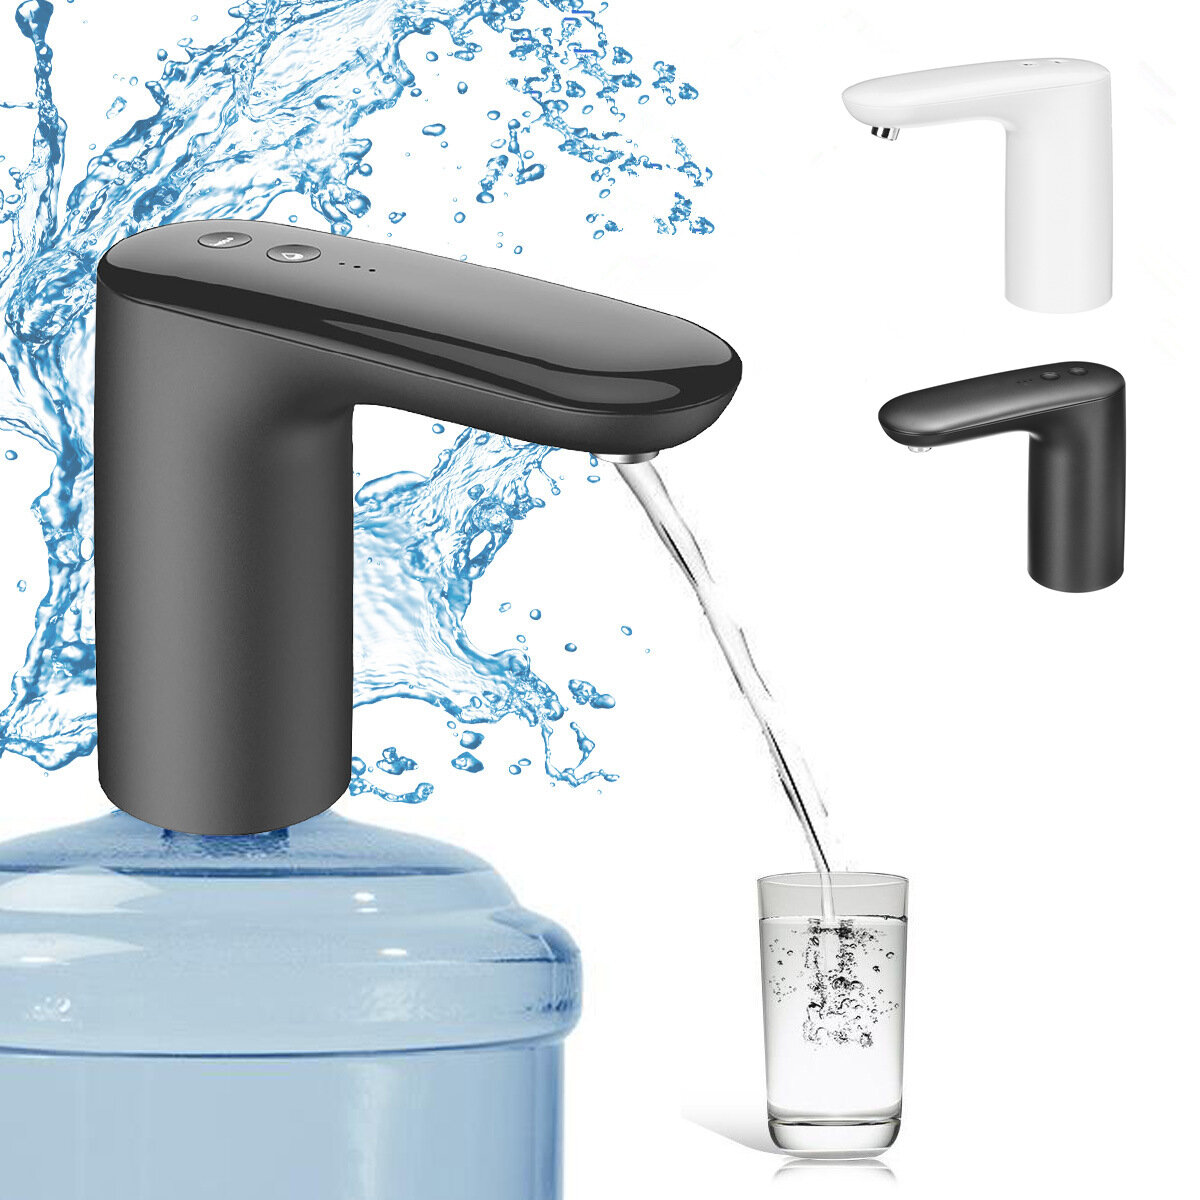 Dispensador de água elétrico automático Smart Water Pump para camping, piquenique, garrafa de galão para beber, interruptor de tratamento de água.